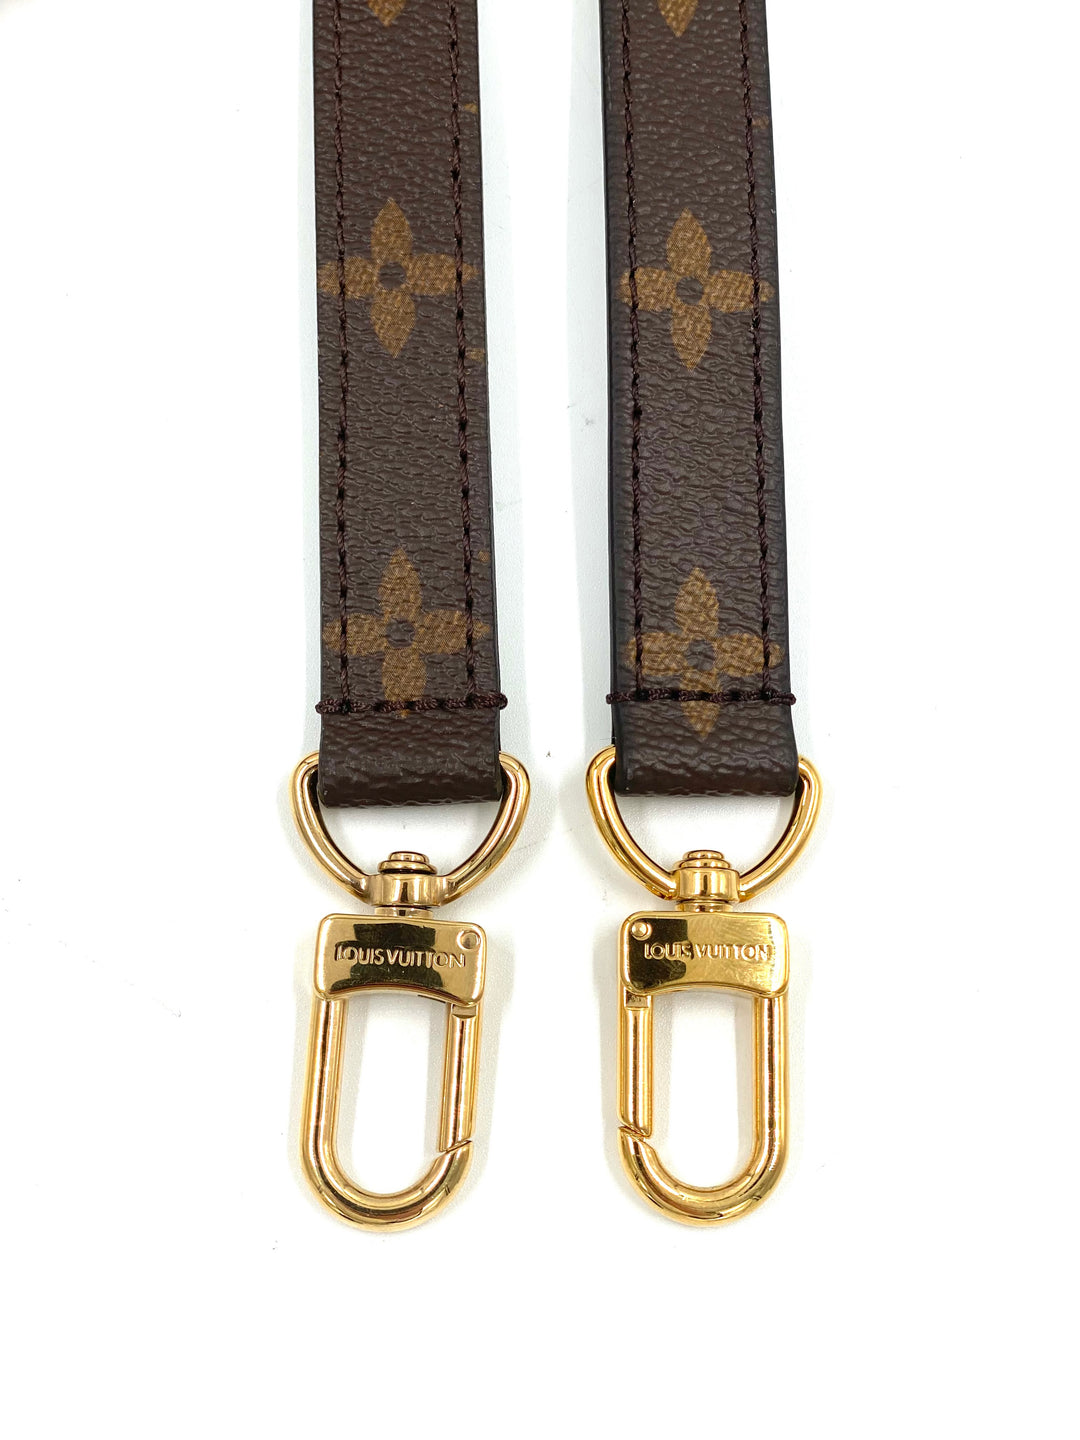 Louis Vuitton adjustable Monogram canvas shoulder strap